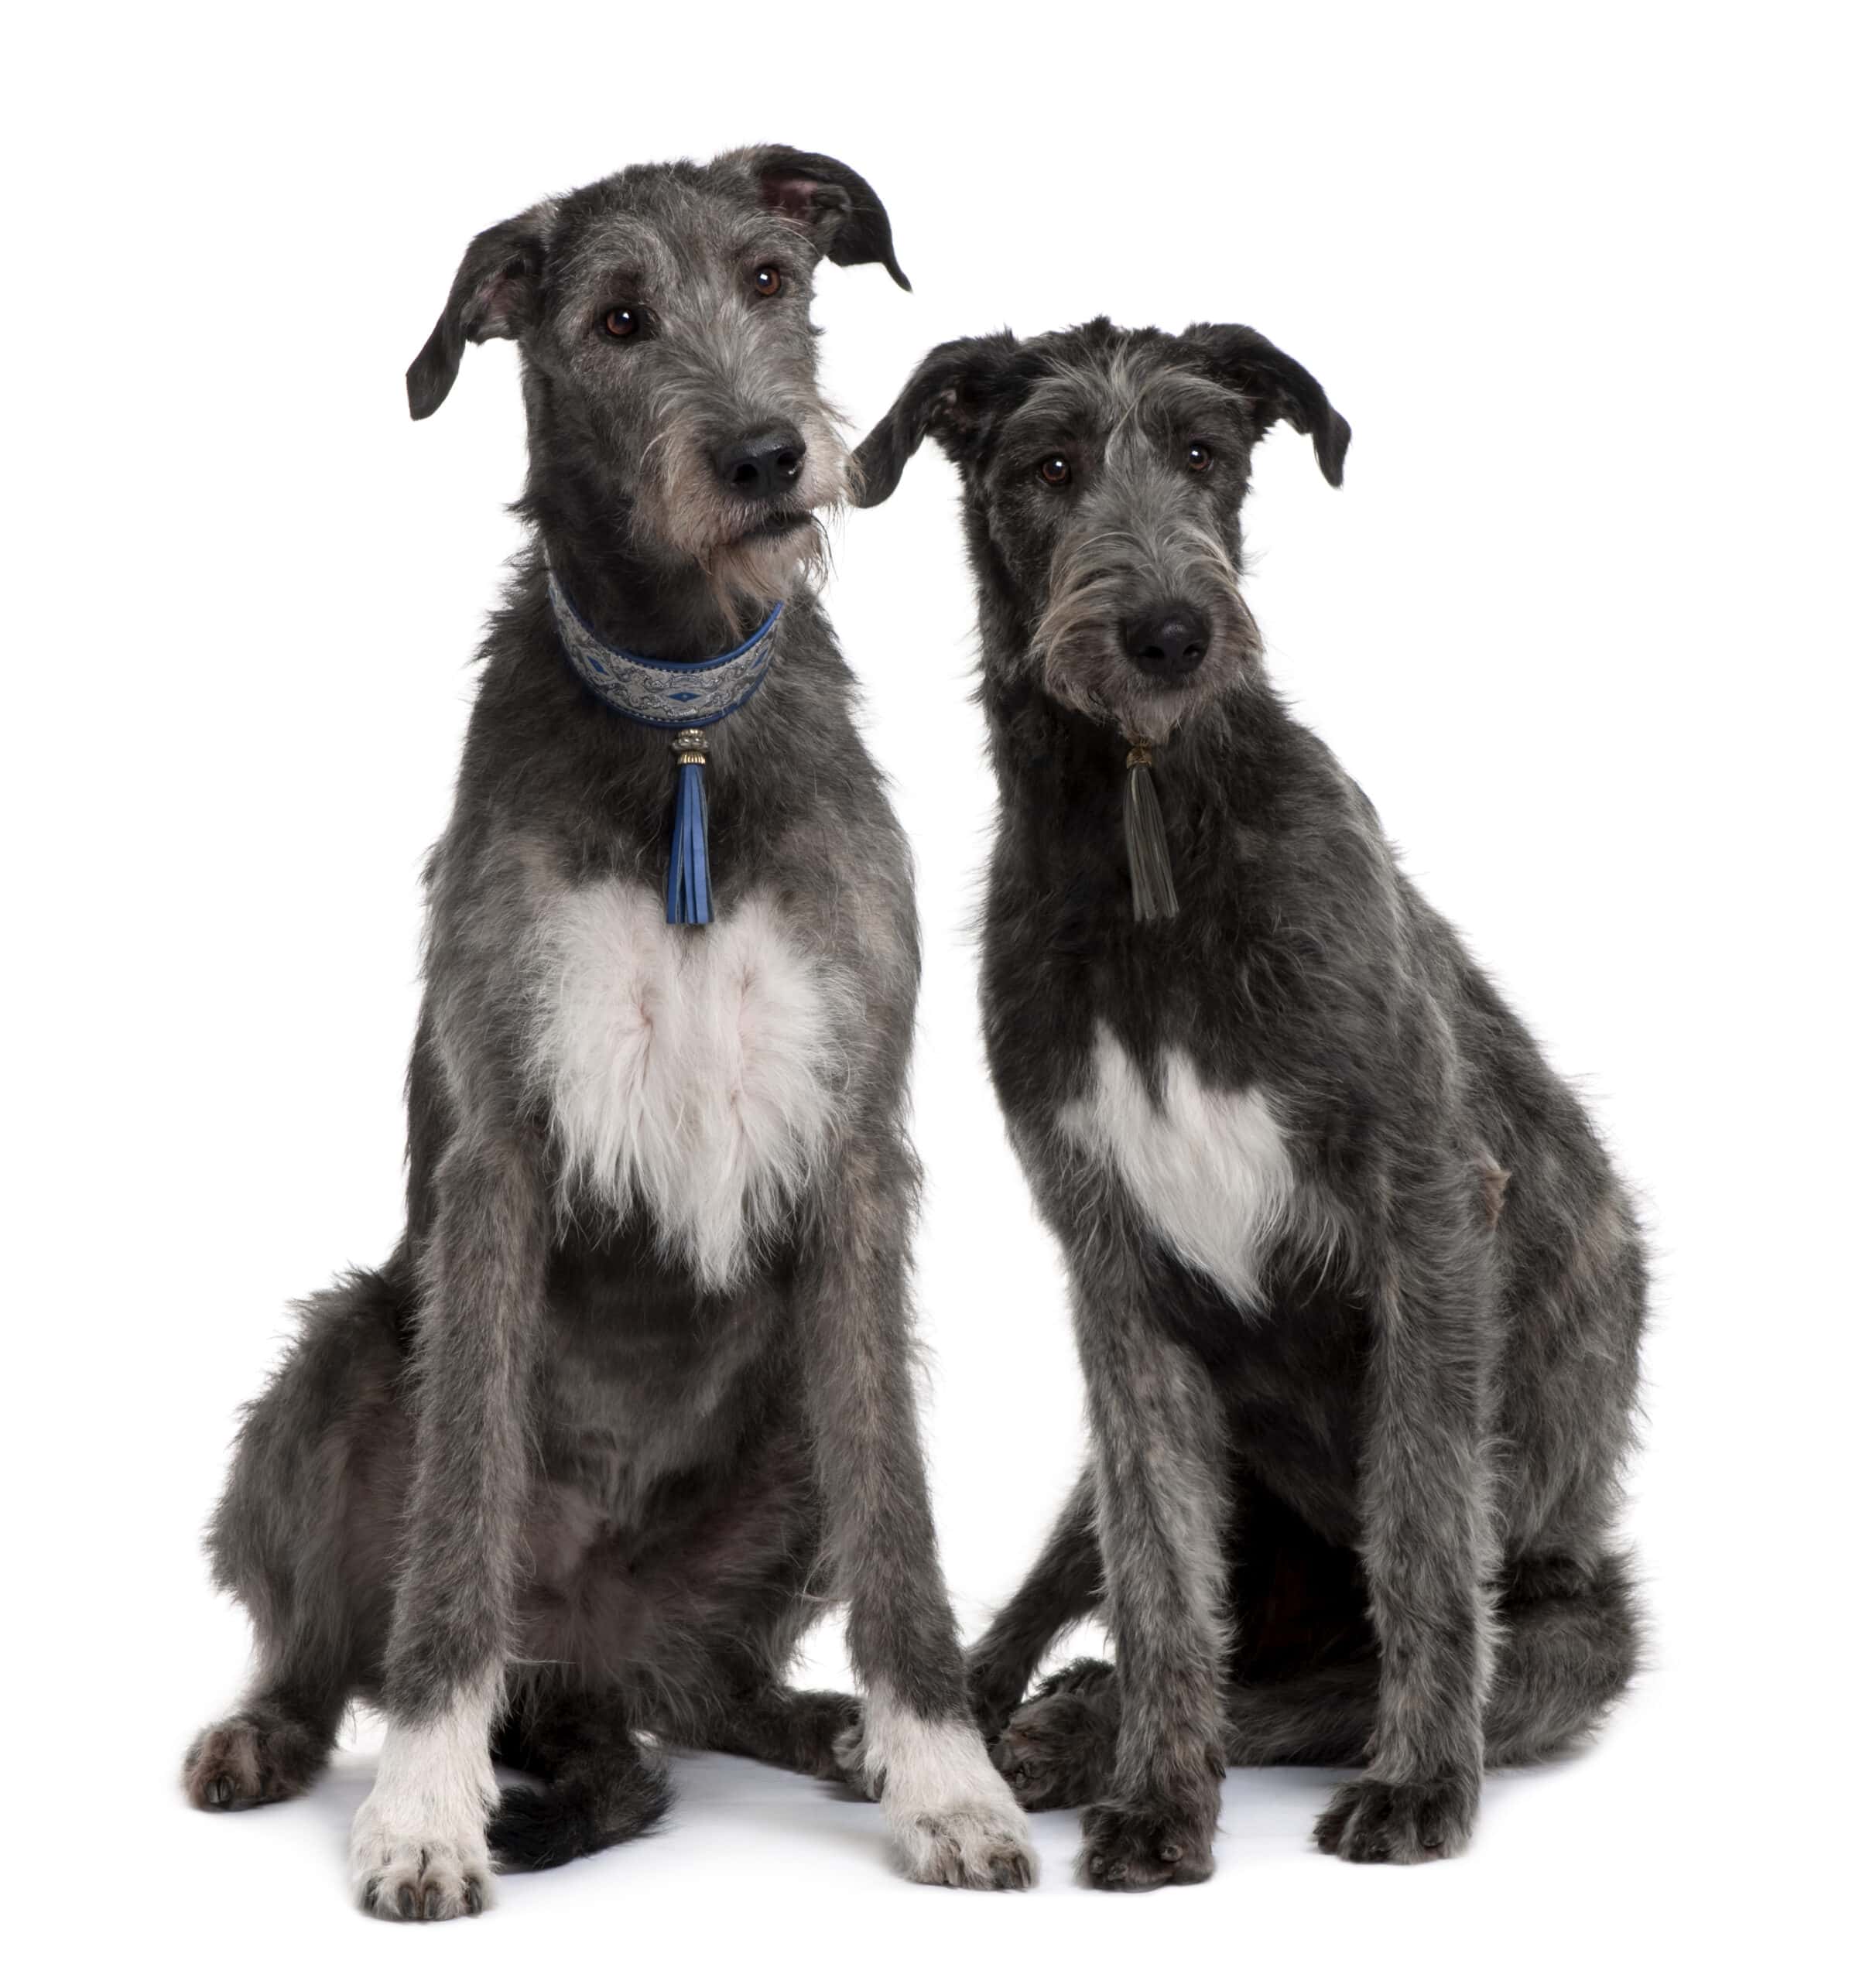 Two Irish Wolfhounds